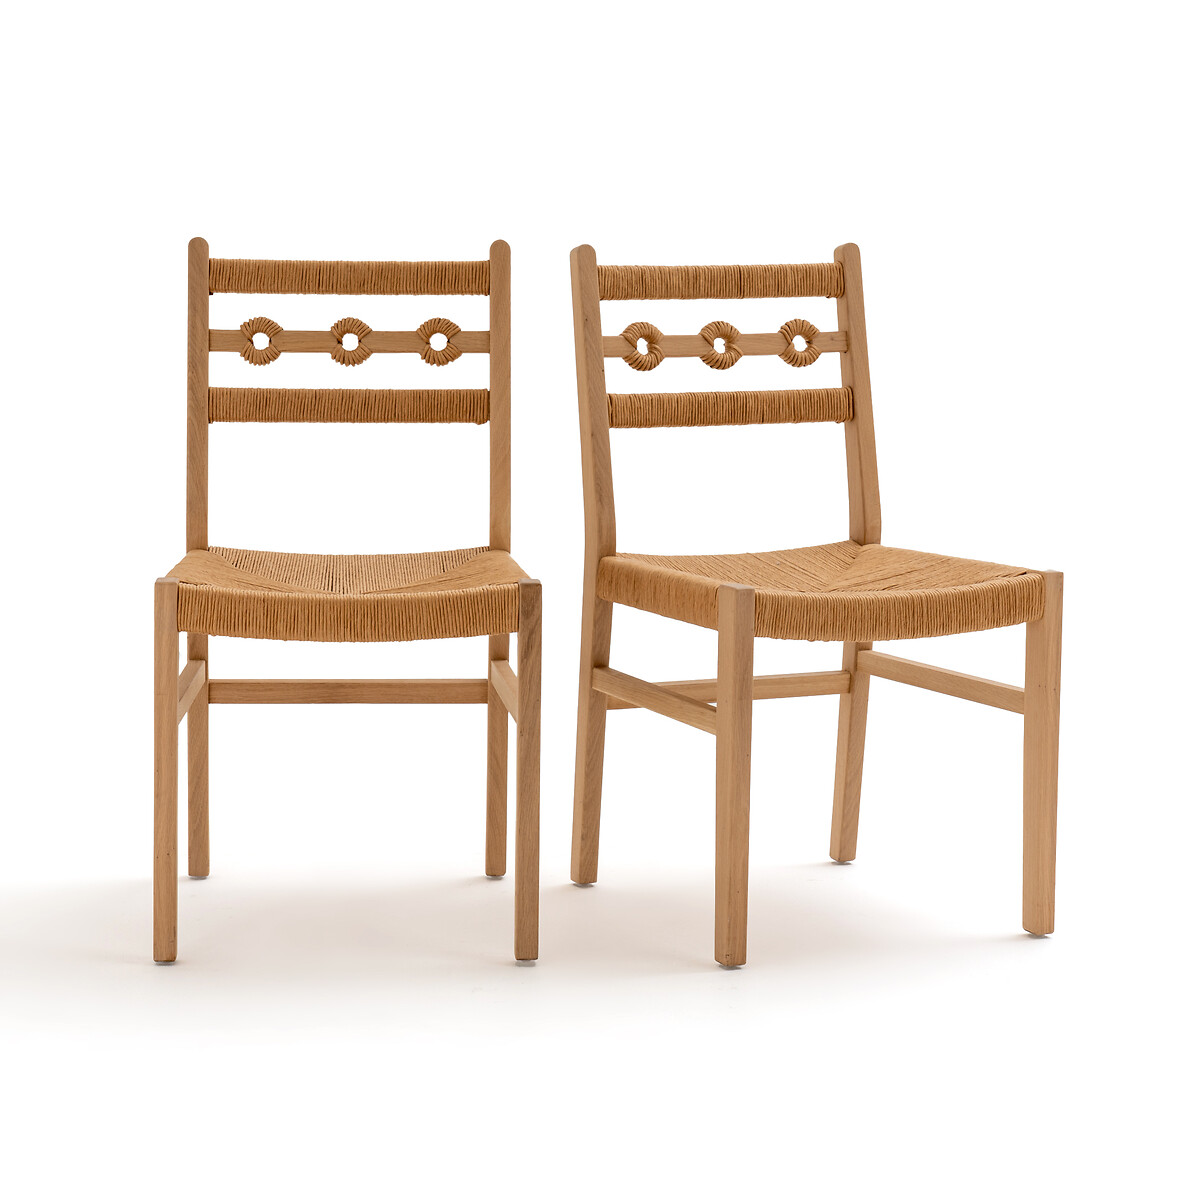 Комплект из стульев из дуба и плетеного материала Menorca единый размер каштановый банкетка для прихожей из дуба и веревки menorca единый размер бежевый